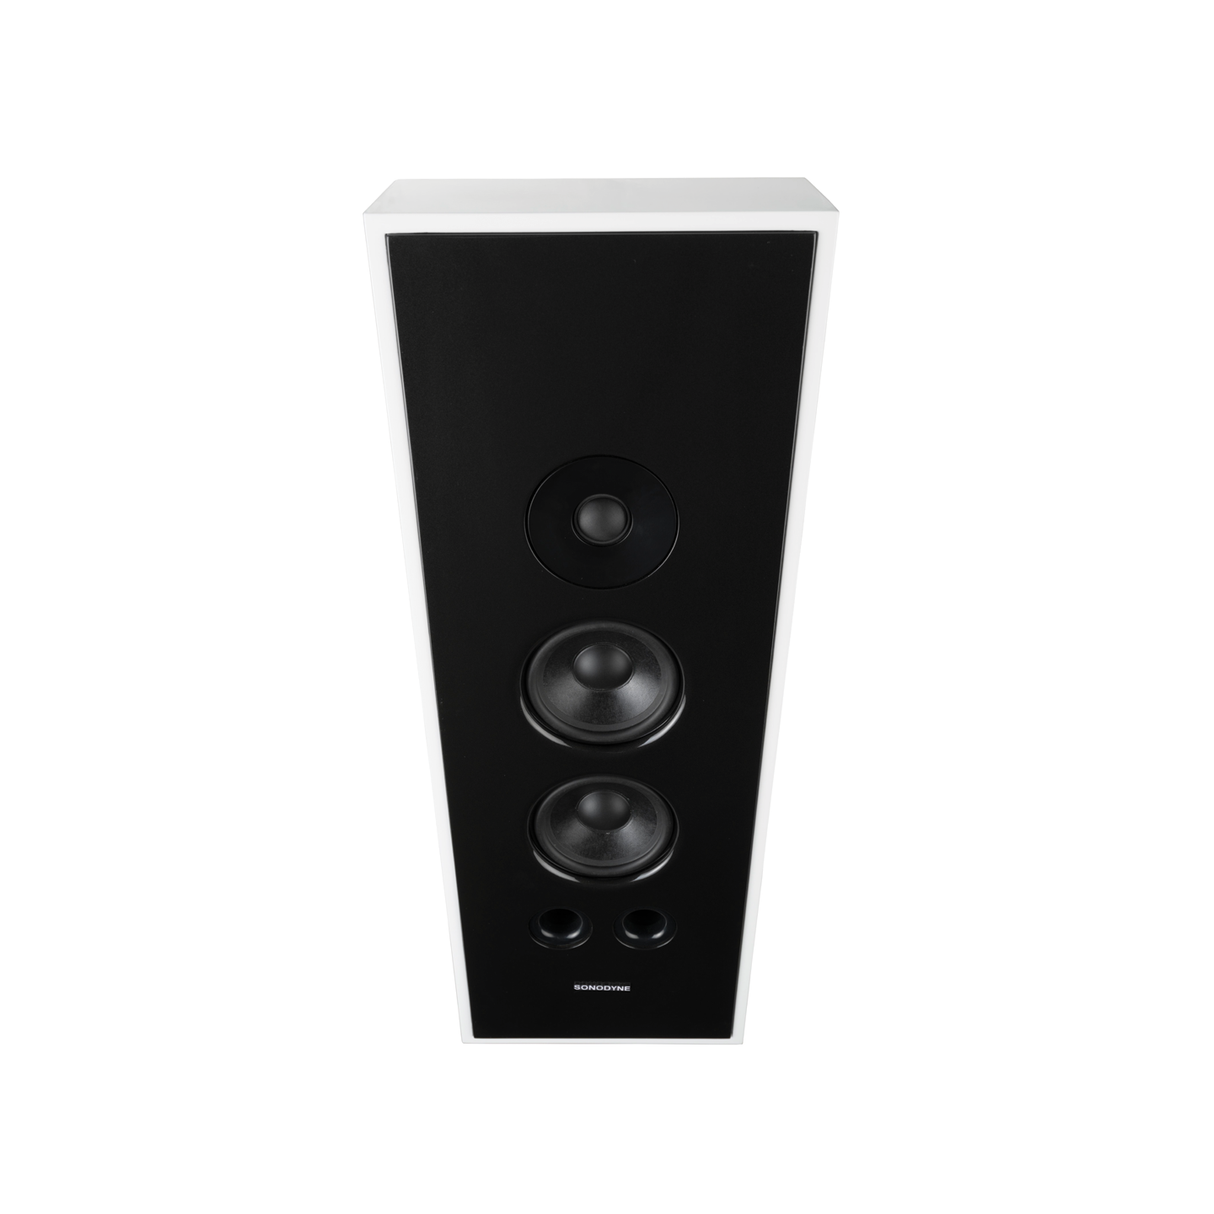 Sonodyne IWO-512 On-Wall/ In-Wall Speaker (Each)